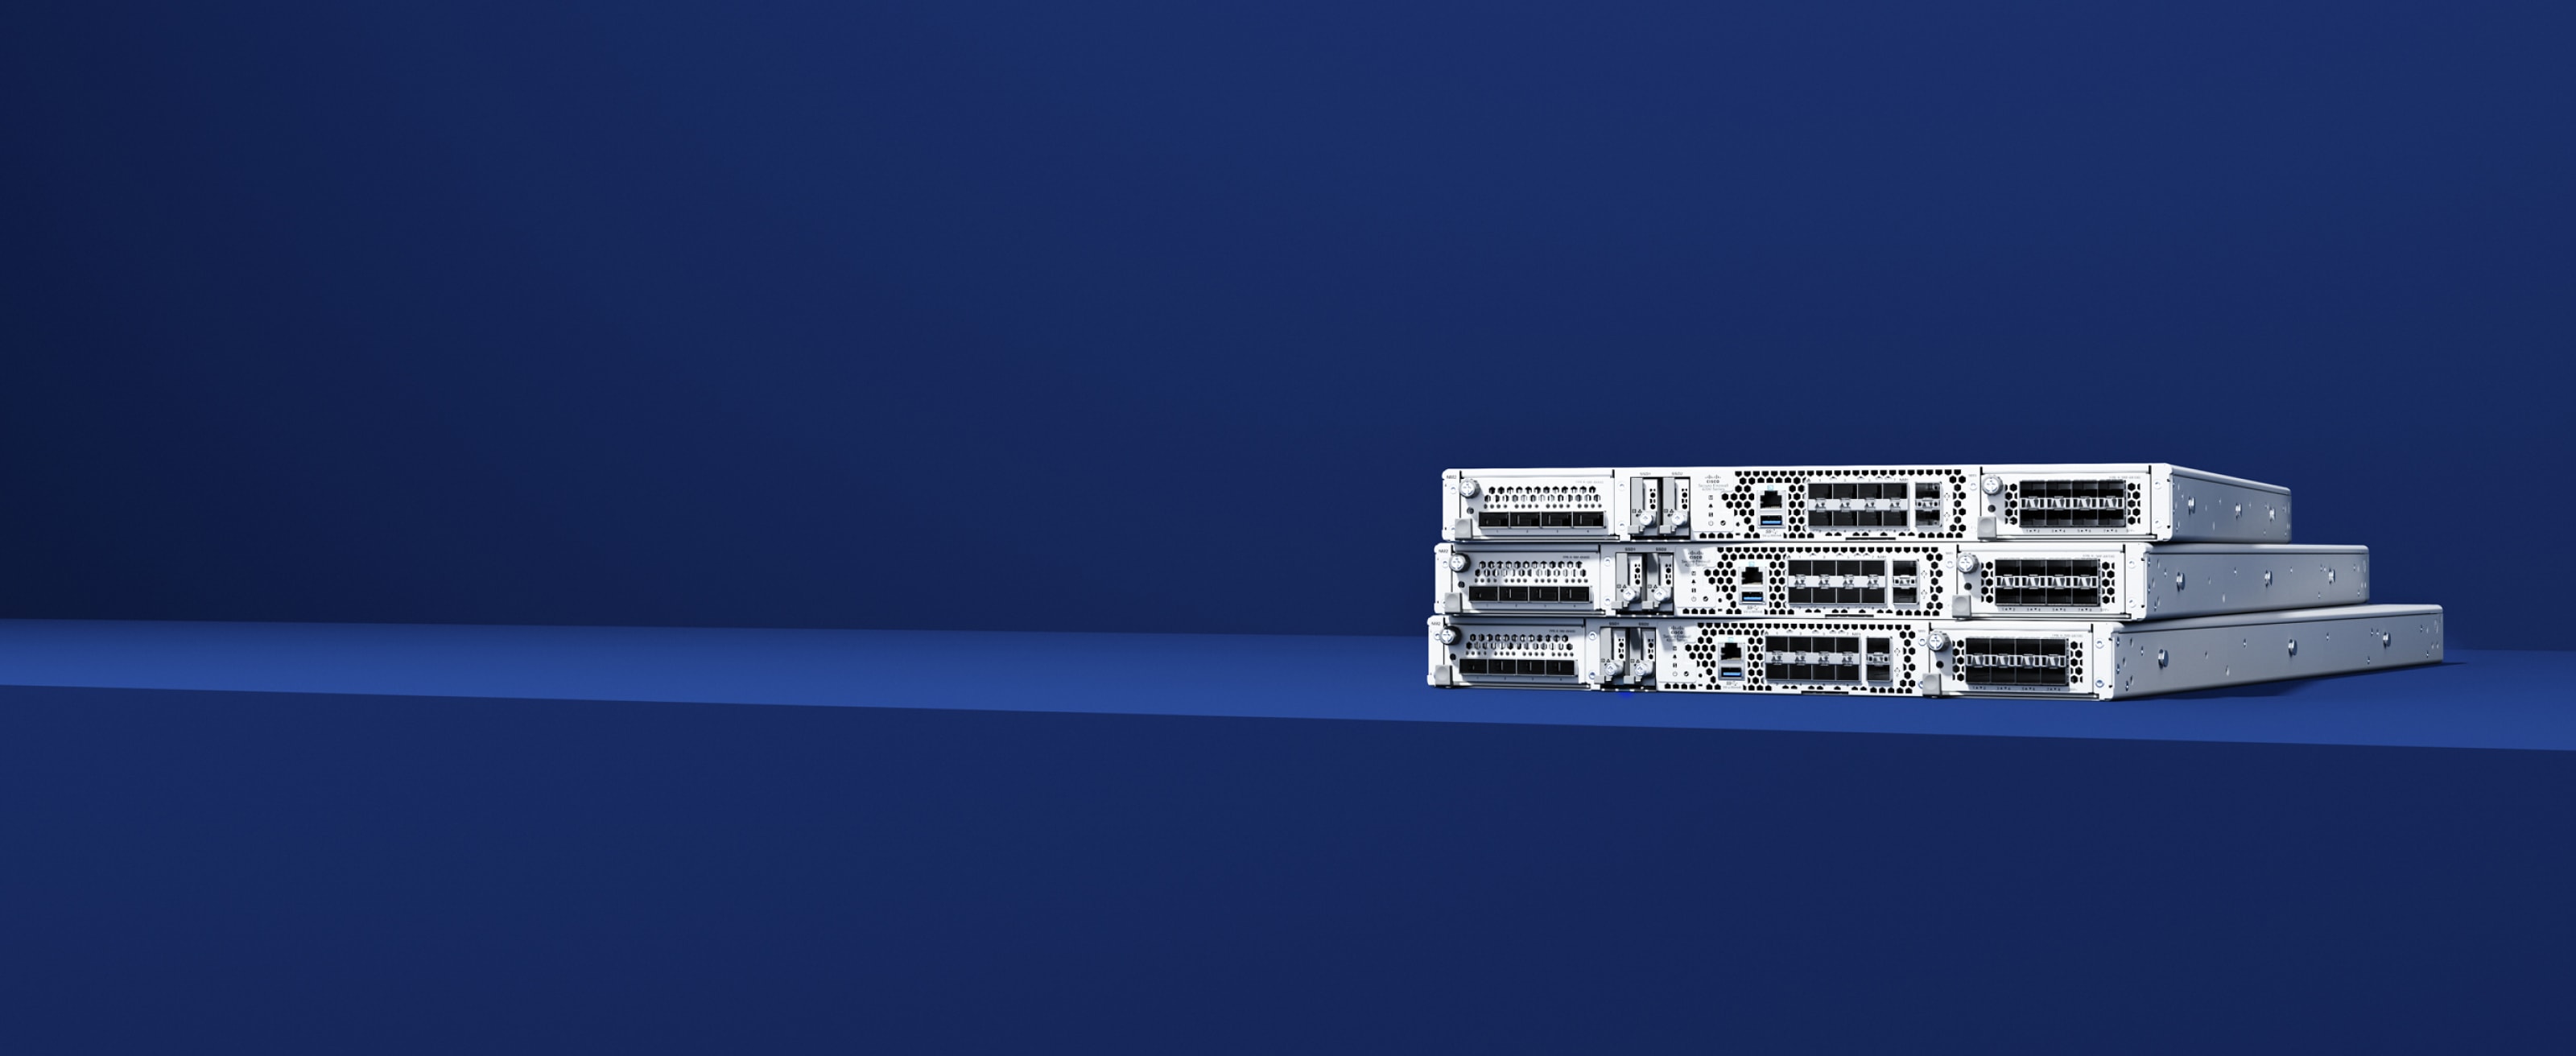 Cisco Secure Firewall de la série 4200